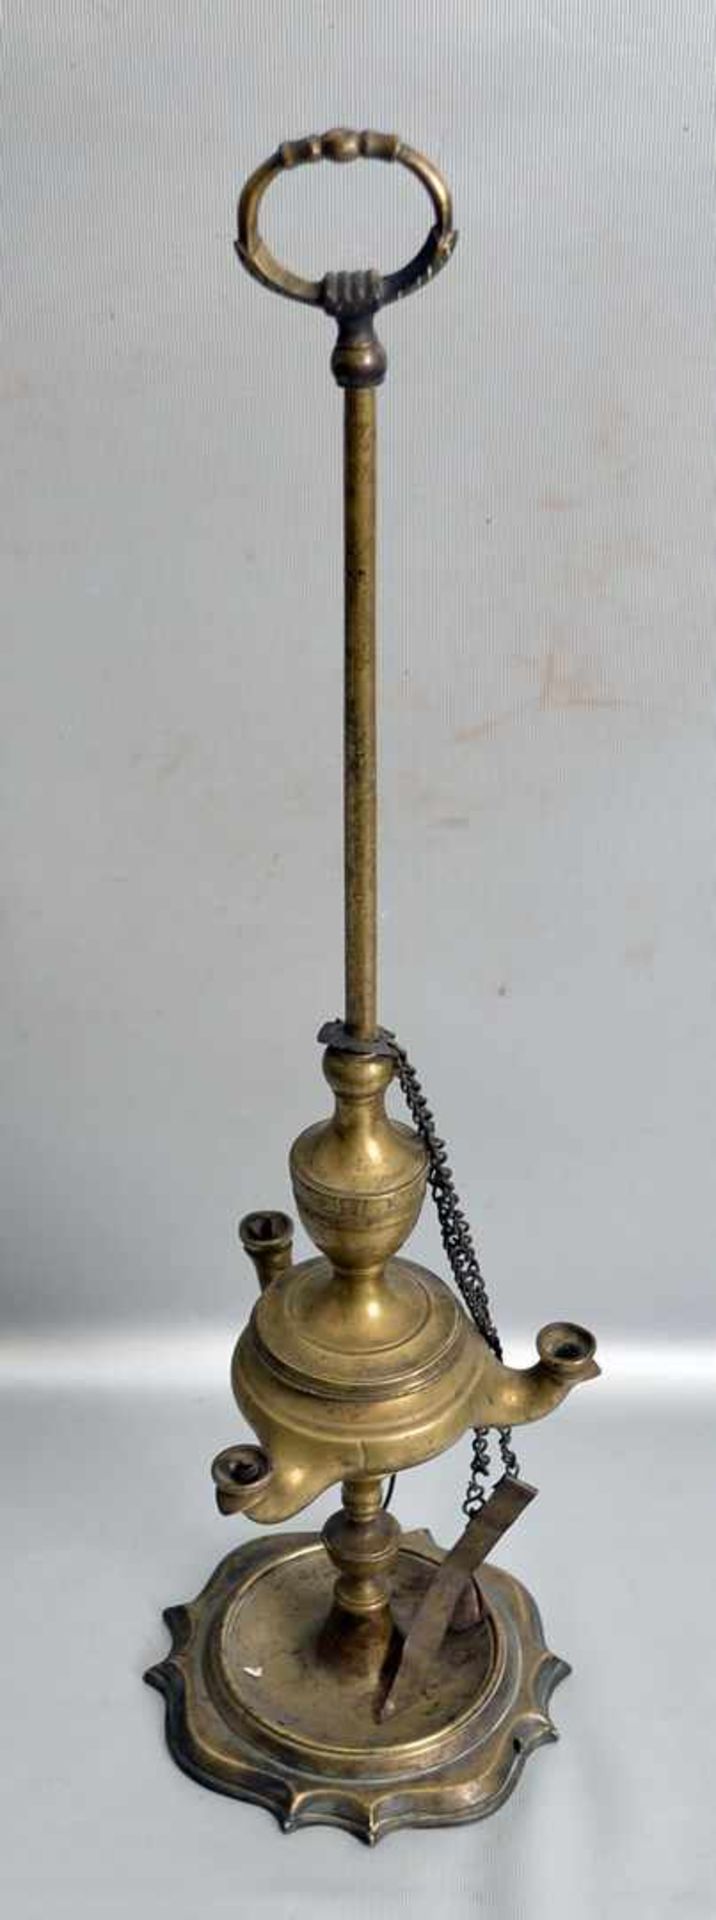 Öllampe Messing, runder Fuß, höhenverstellbar, H 54 cm, um 1900